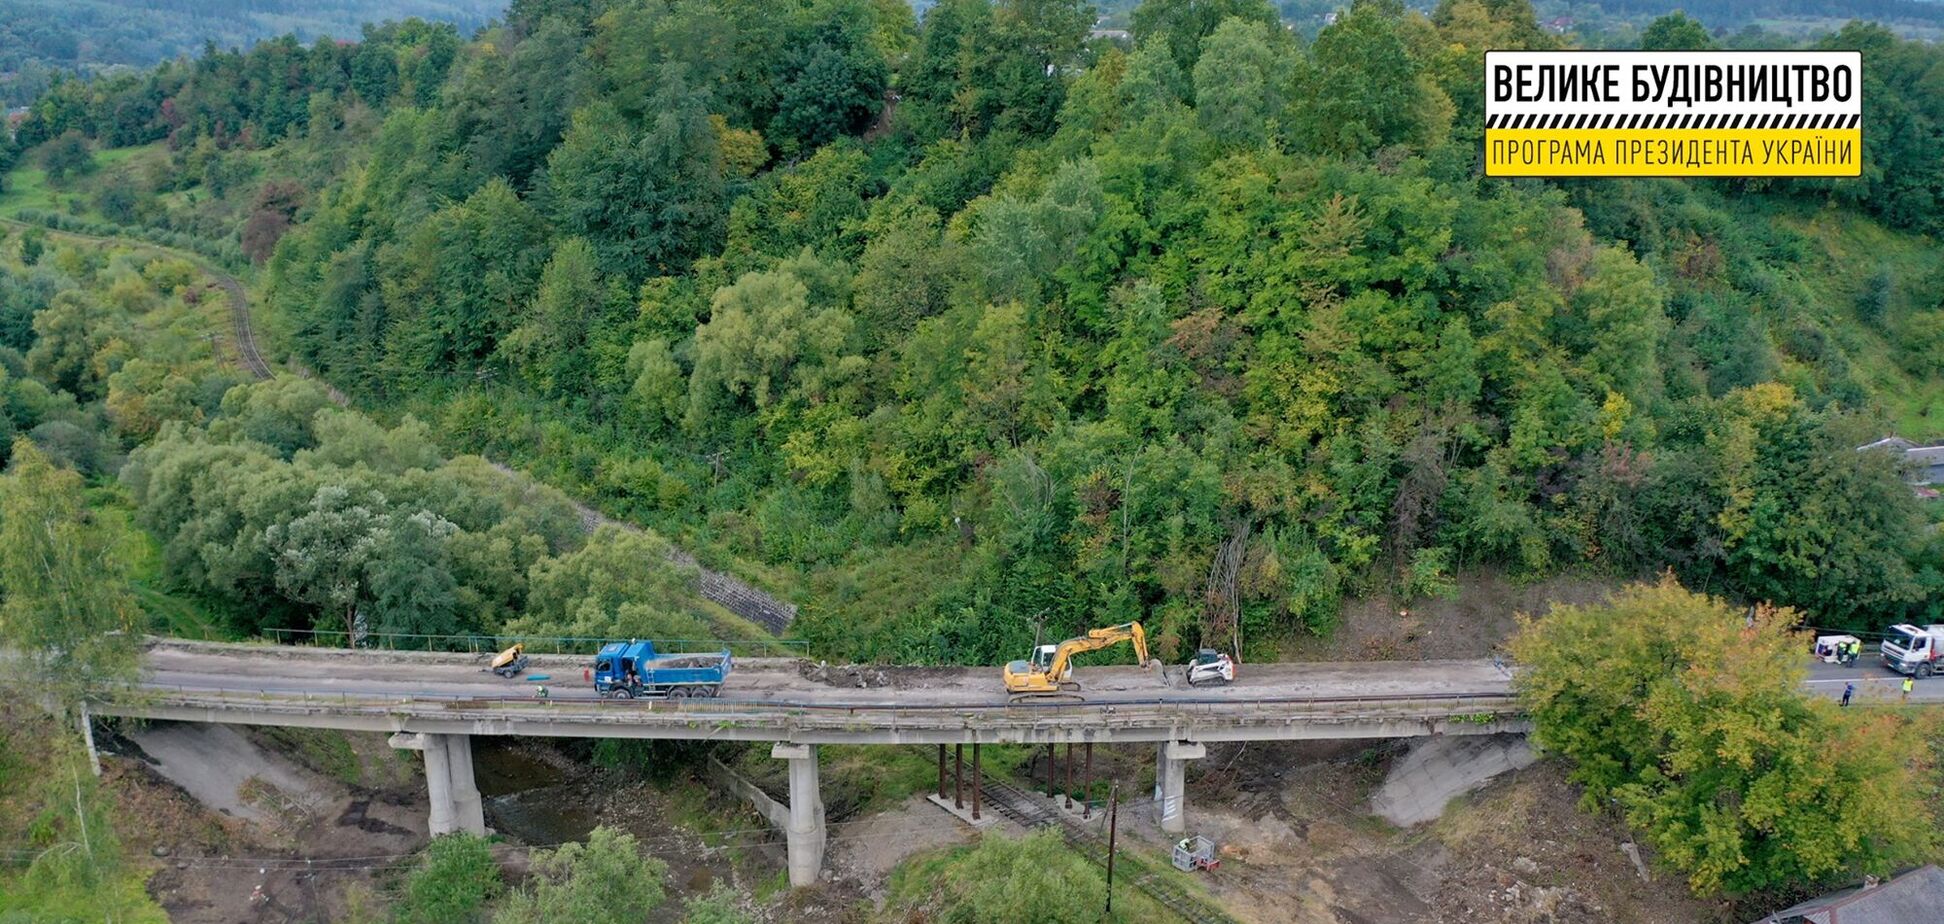 На Прикарпатті 'Велике будівництво' Зеленського розпочало ремонт моста через гірську річку